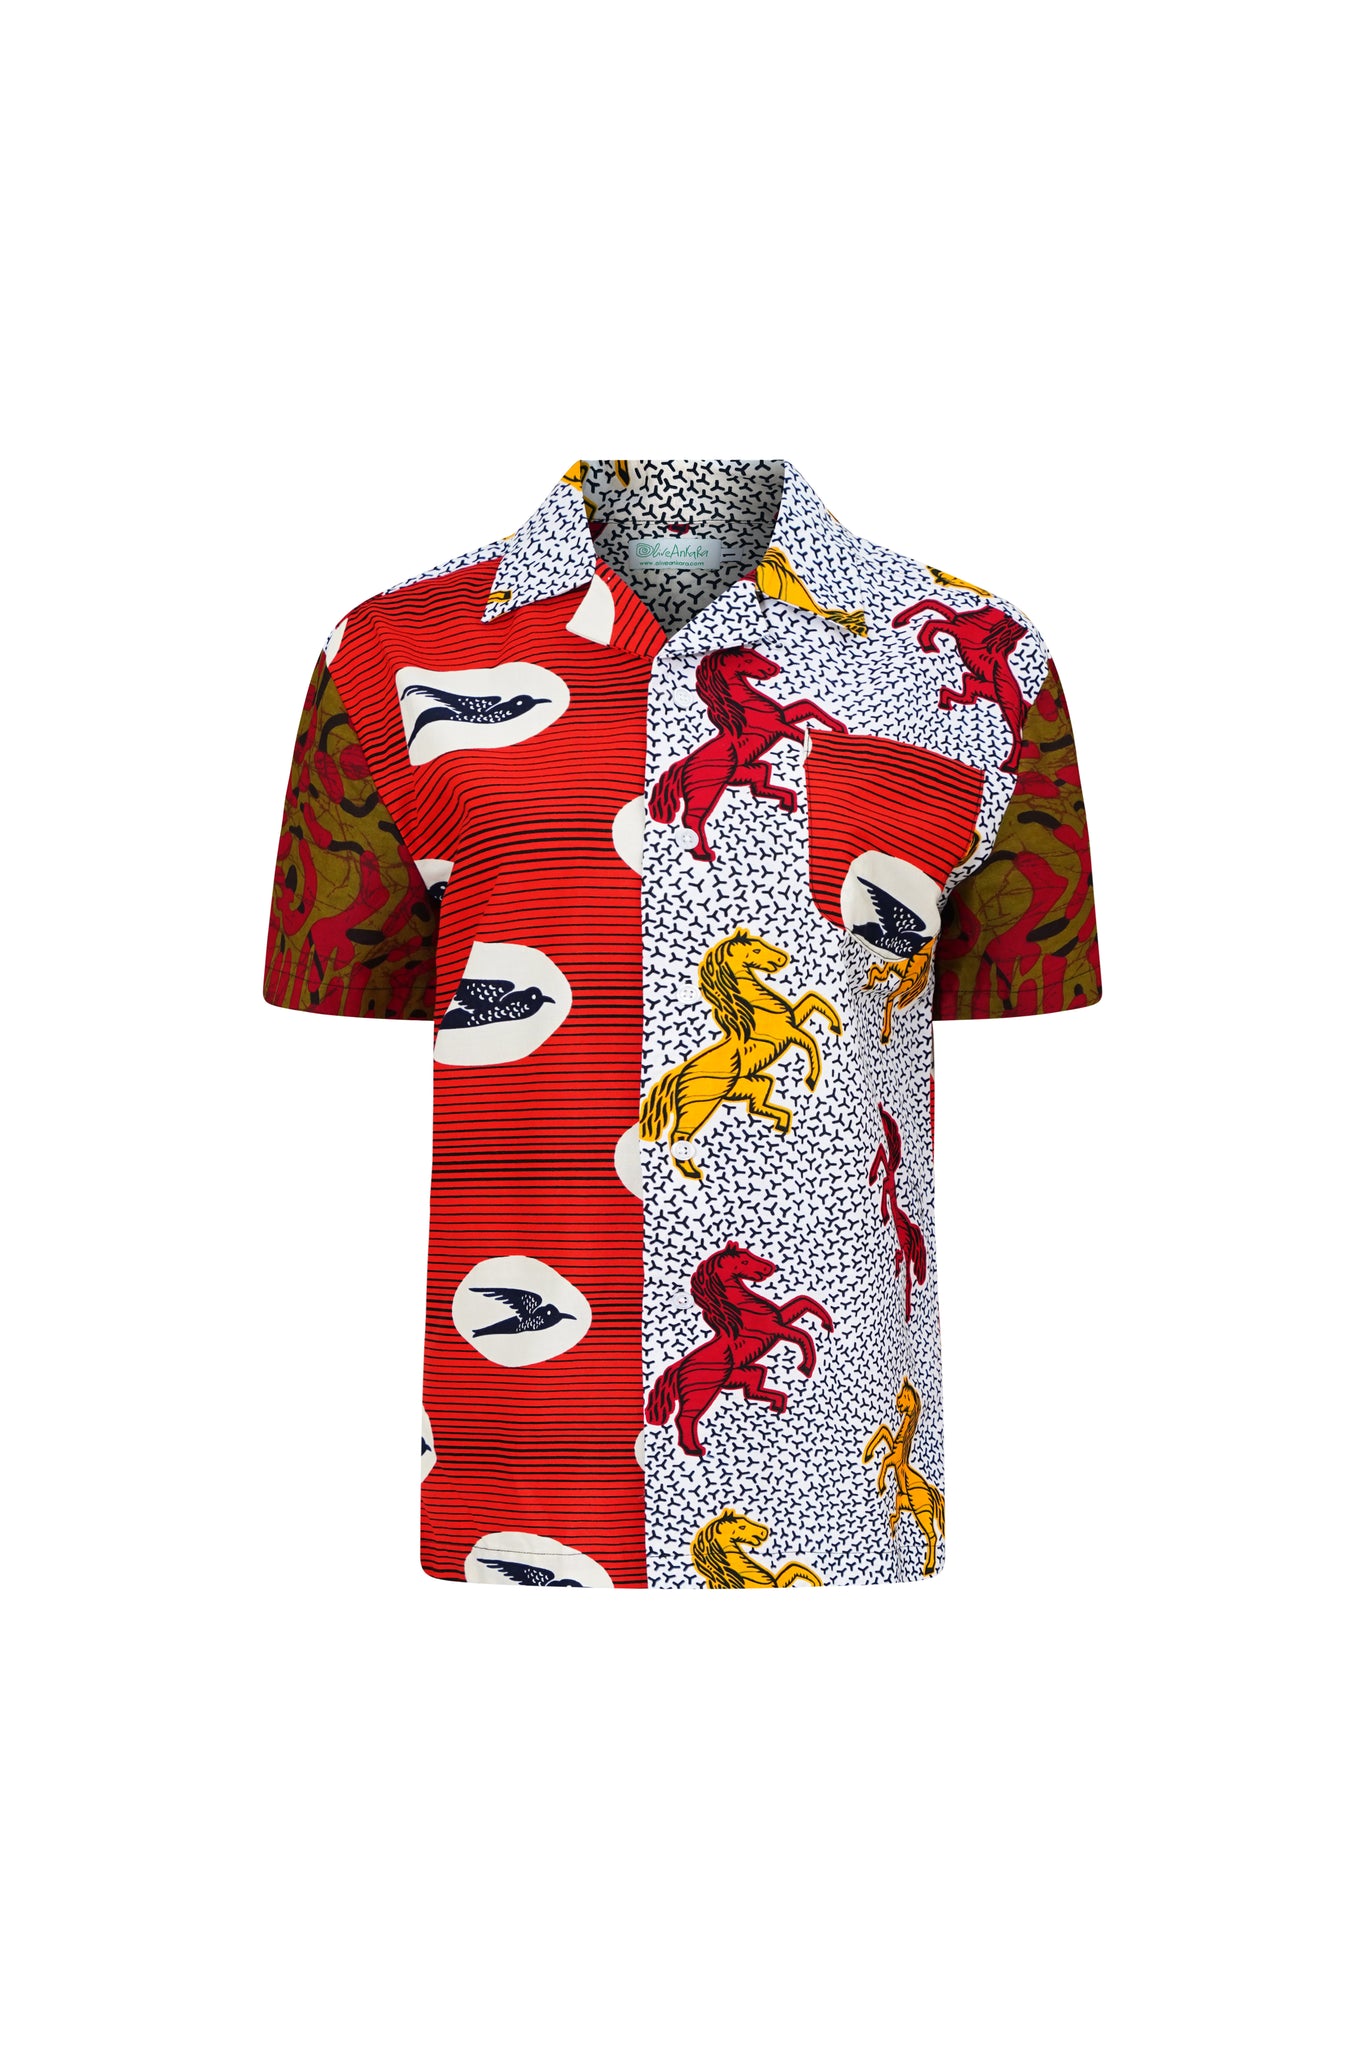 Zika Shirt - Mix Match Horses/Speedbird Red White and Yellow African Ankara Wax Cotton Print